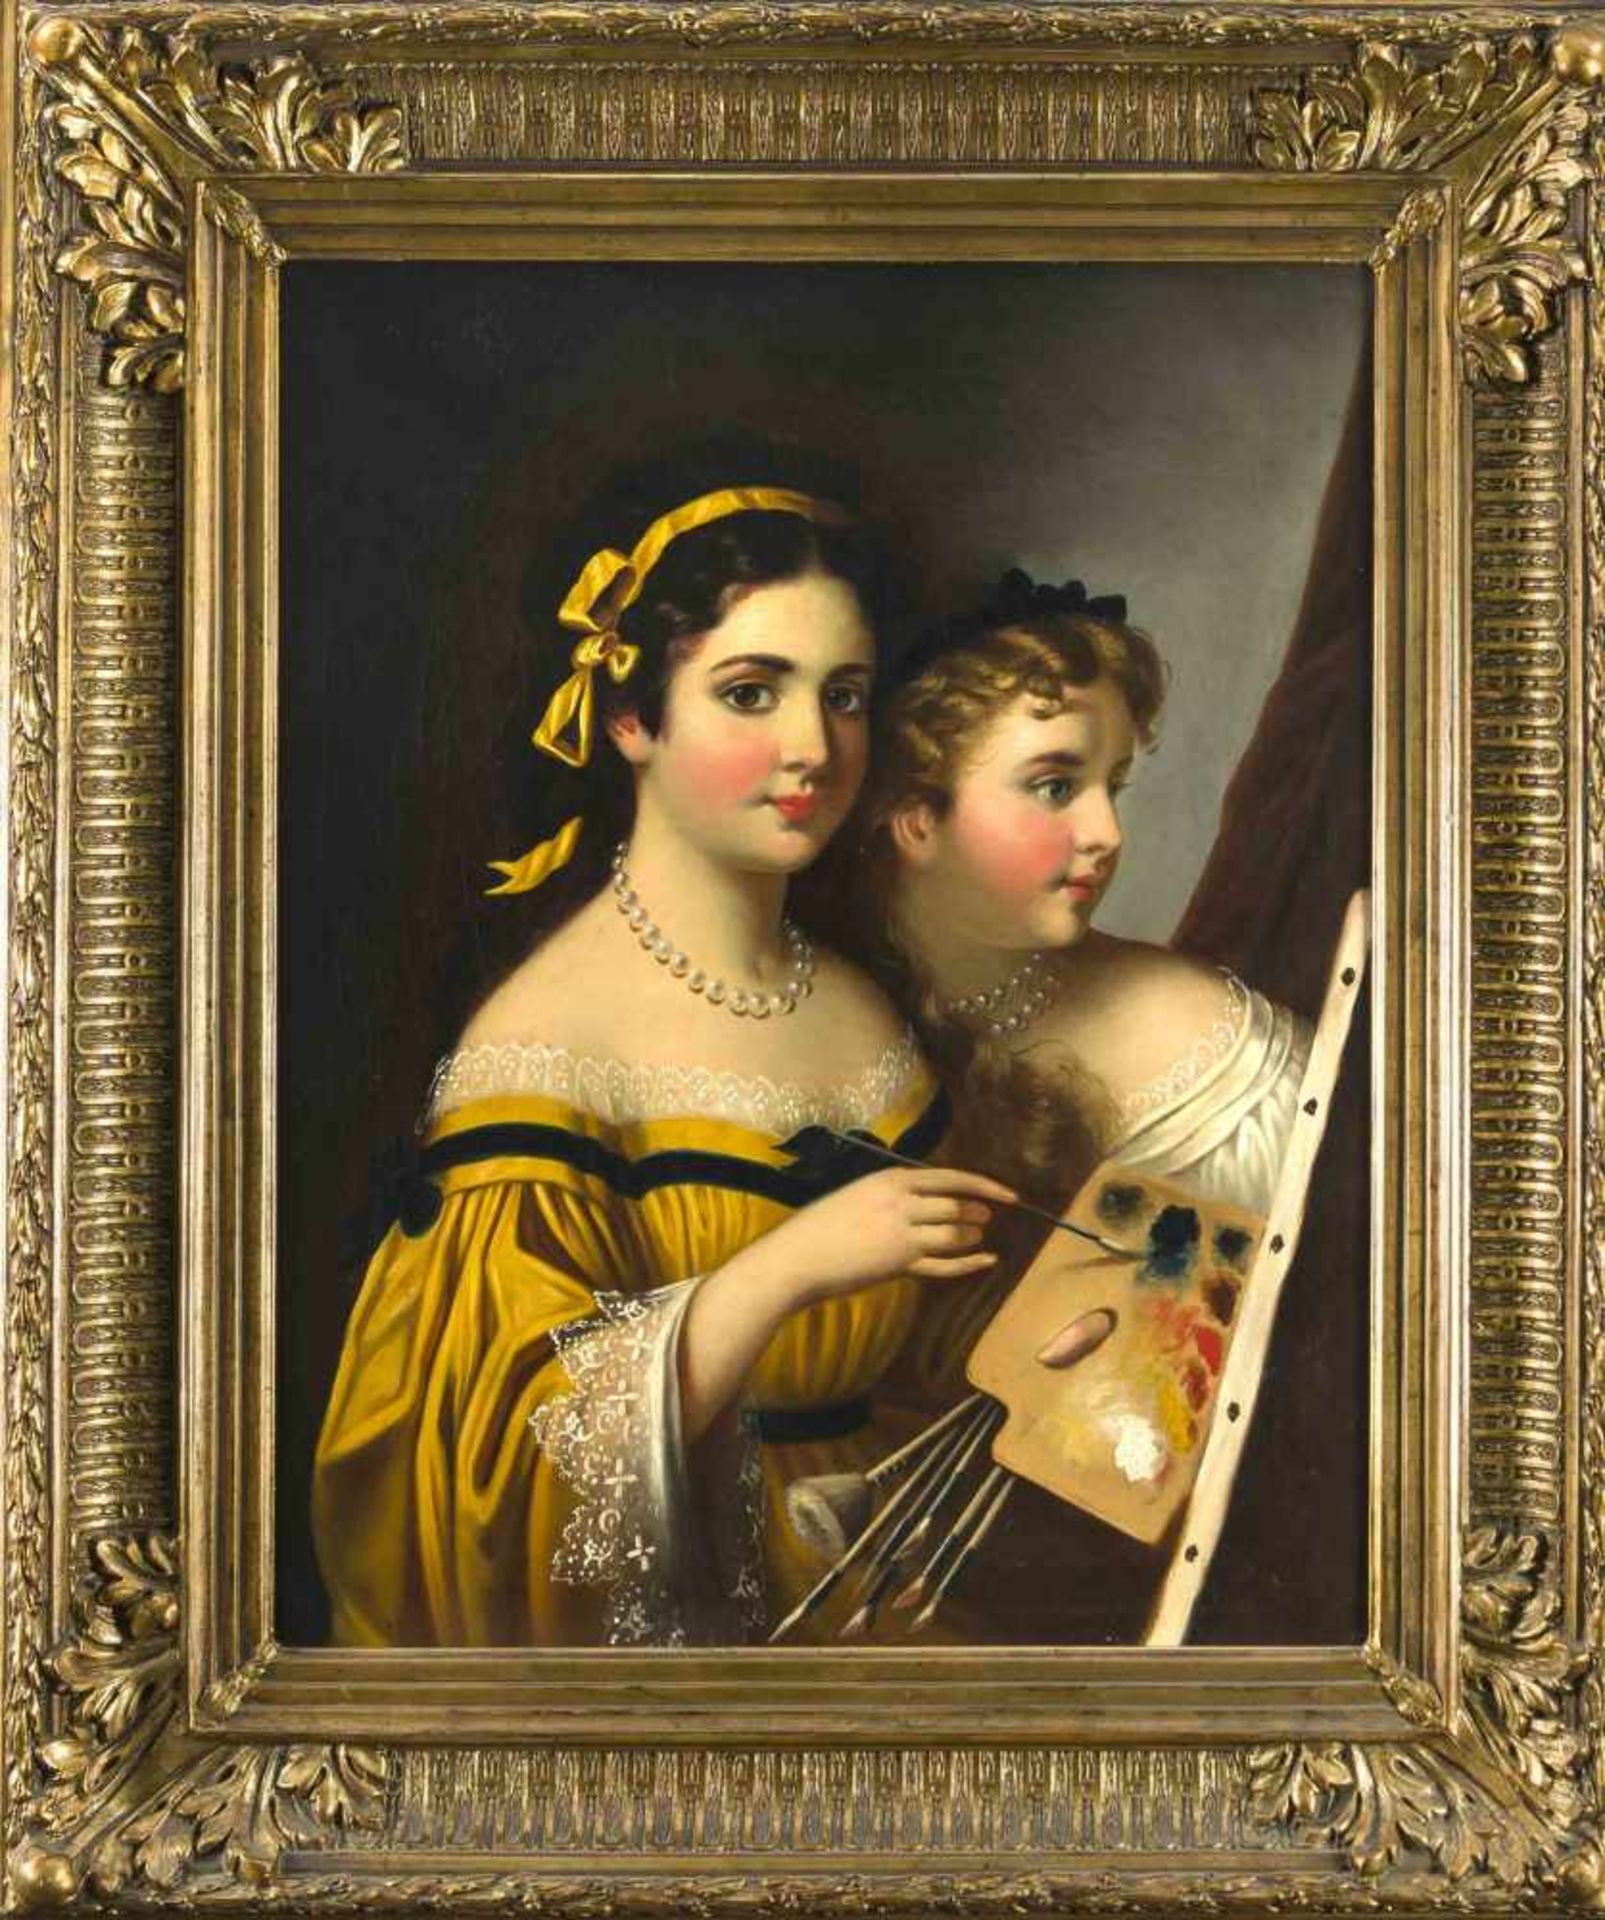 Anonymer Malerin 1. H. 19. Jh., zwei Schwestern an der Staffelei, Künstlerinnenselbstportrait, Öl/